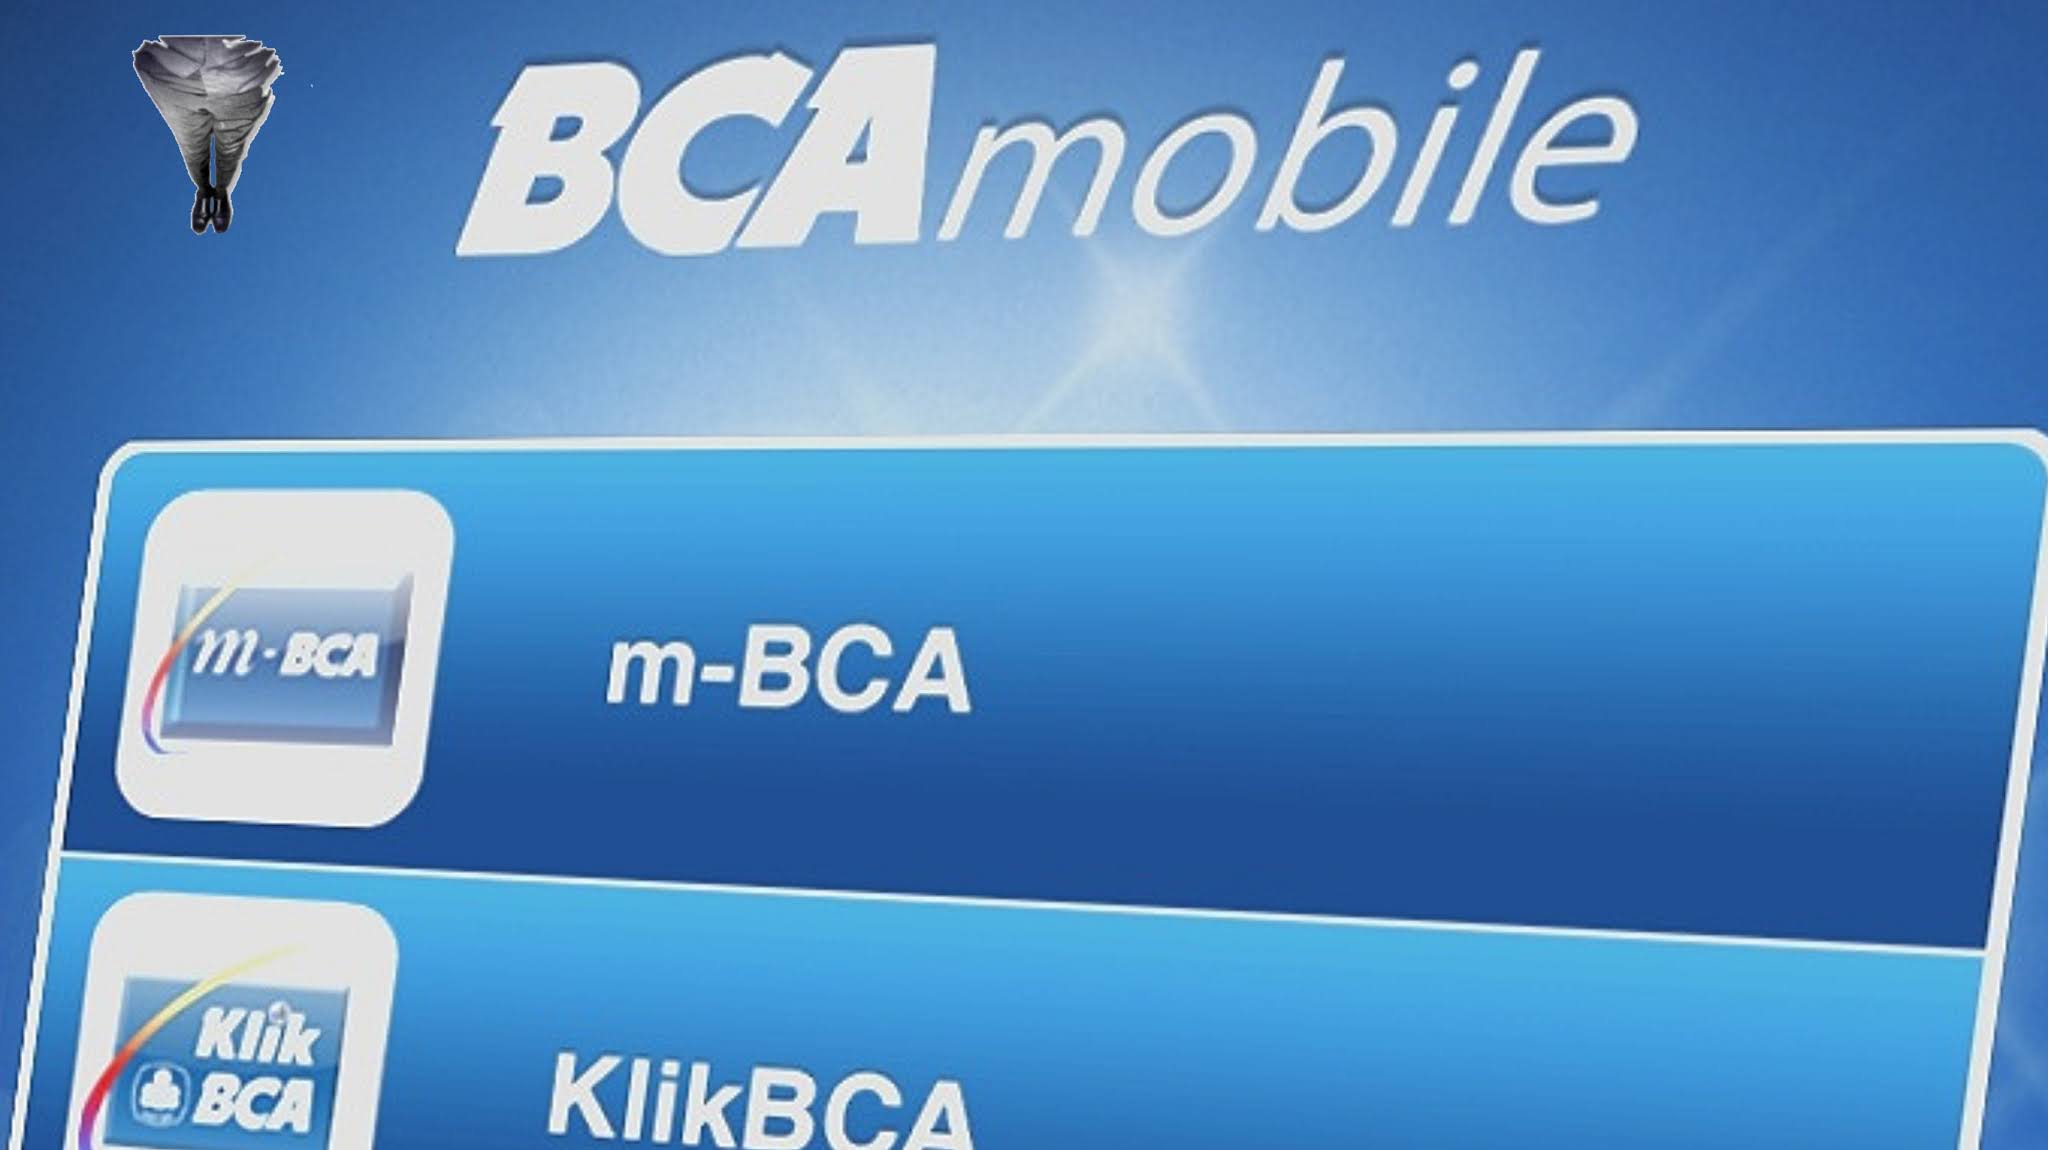 Langkah-langkah mudah untuk bergabung dan mengaktifkan financial BCA Mobile